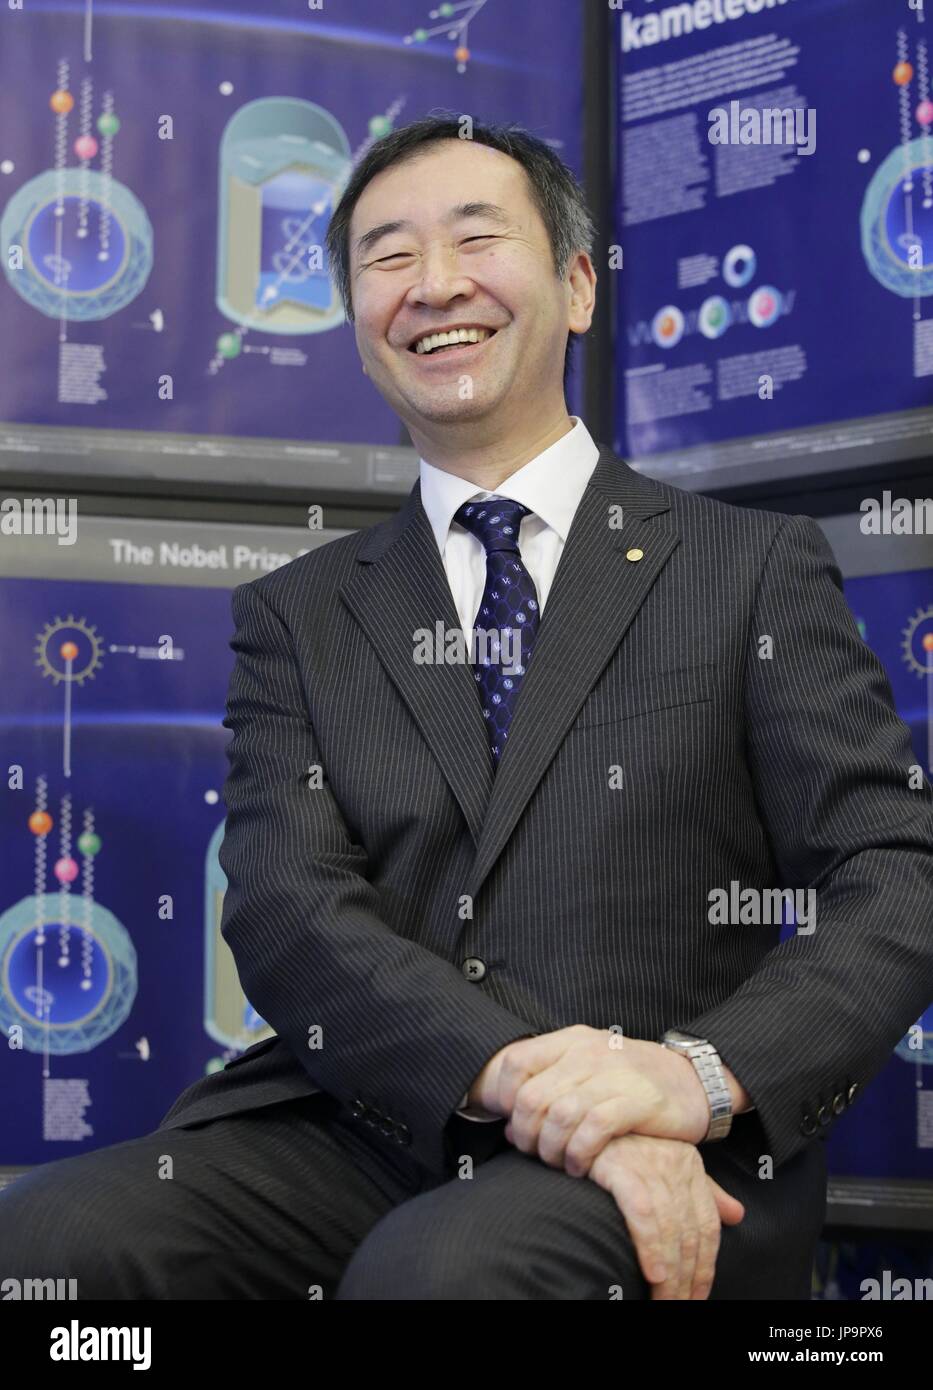 Lo scienziato giapponese Takaaki Kajita, che hanno condiviso il 2015 Premio Nobel per la fisica con il Canada's Arthur McDonald, dà un'intervista con i media a Stoccolma il 7 dicembre, 2015. Kajita ha espresso gratitudine per il sostegno di persone in Kamioka, la comunità giapponese che ospita il Super-Kamiokande Neutrino Observatory. (Kyodo) ==Kyodo Foto Stock